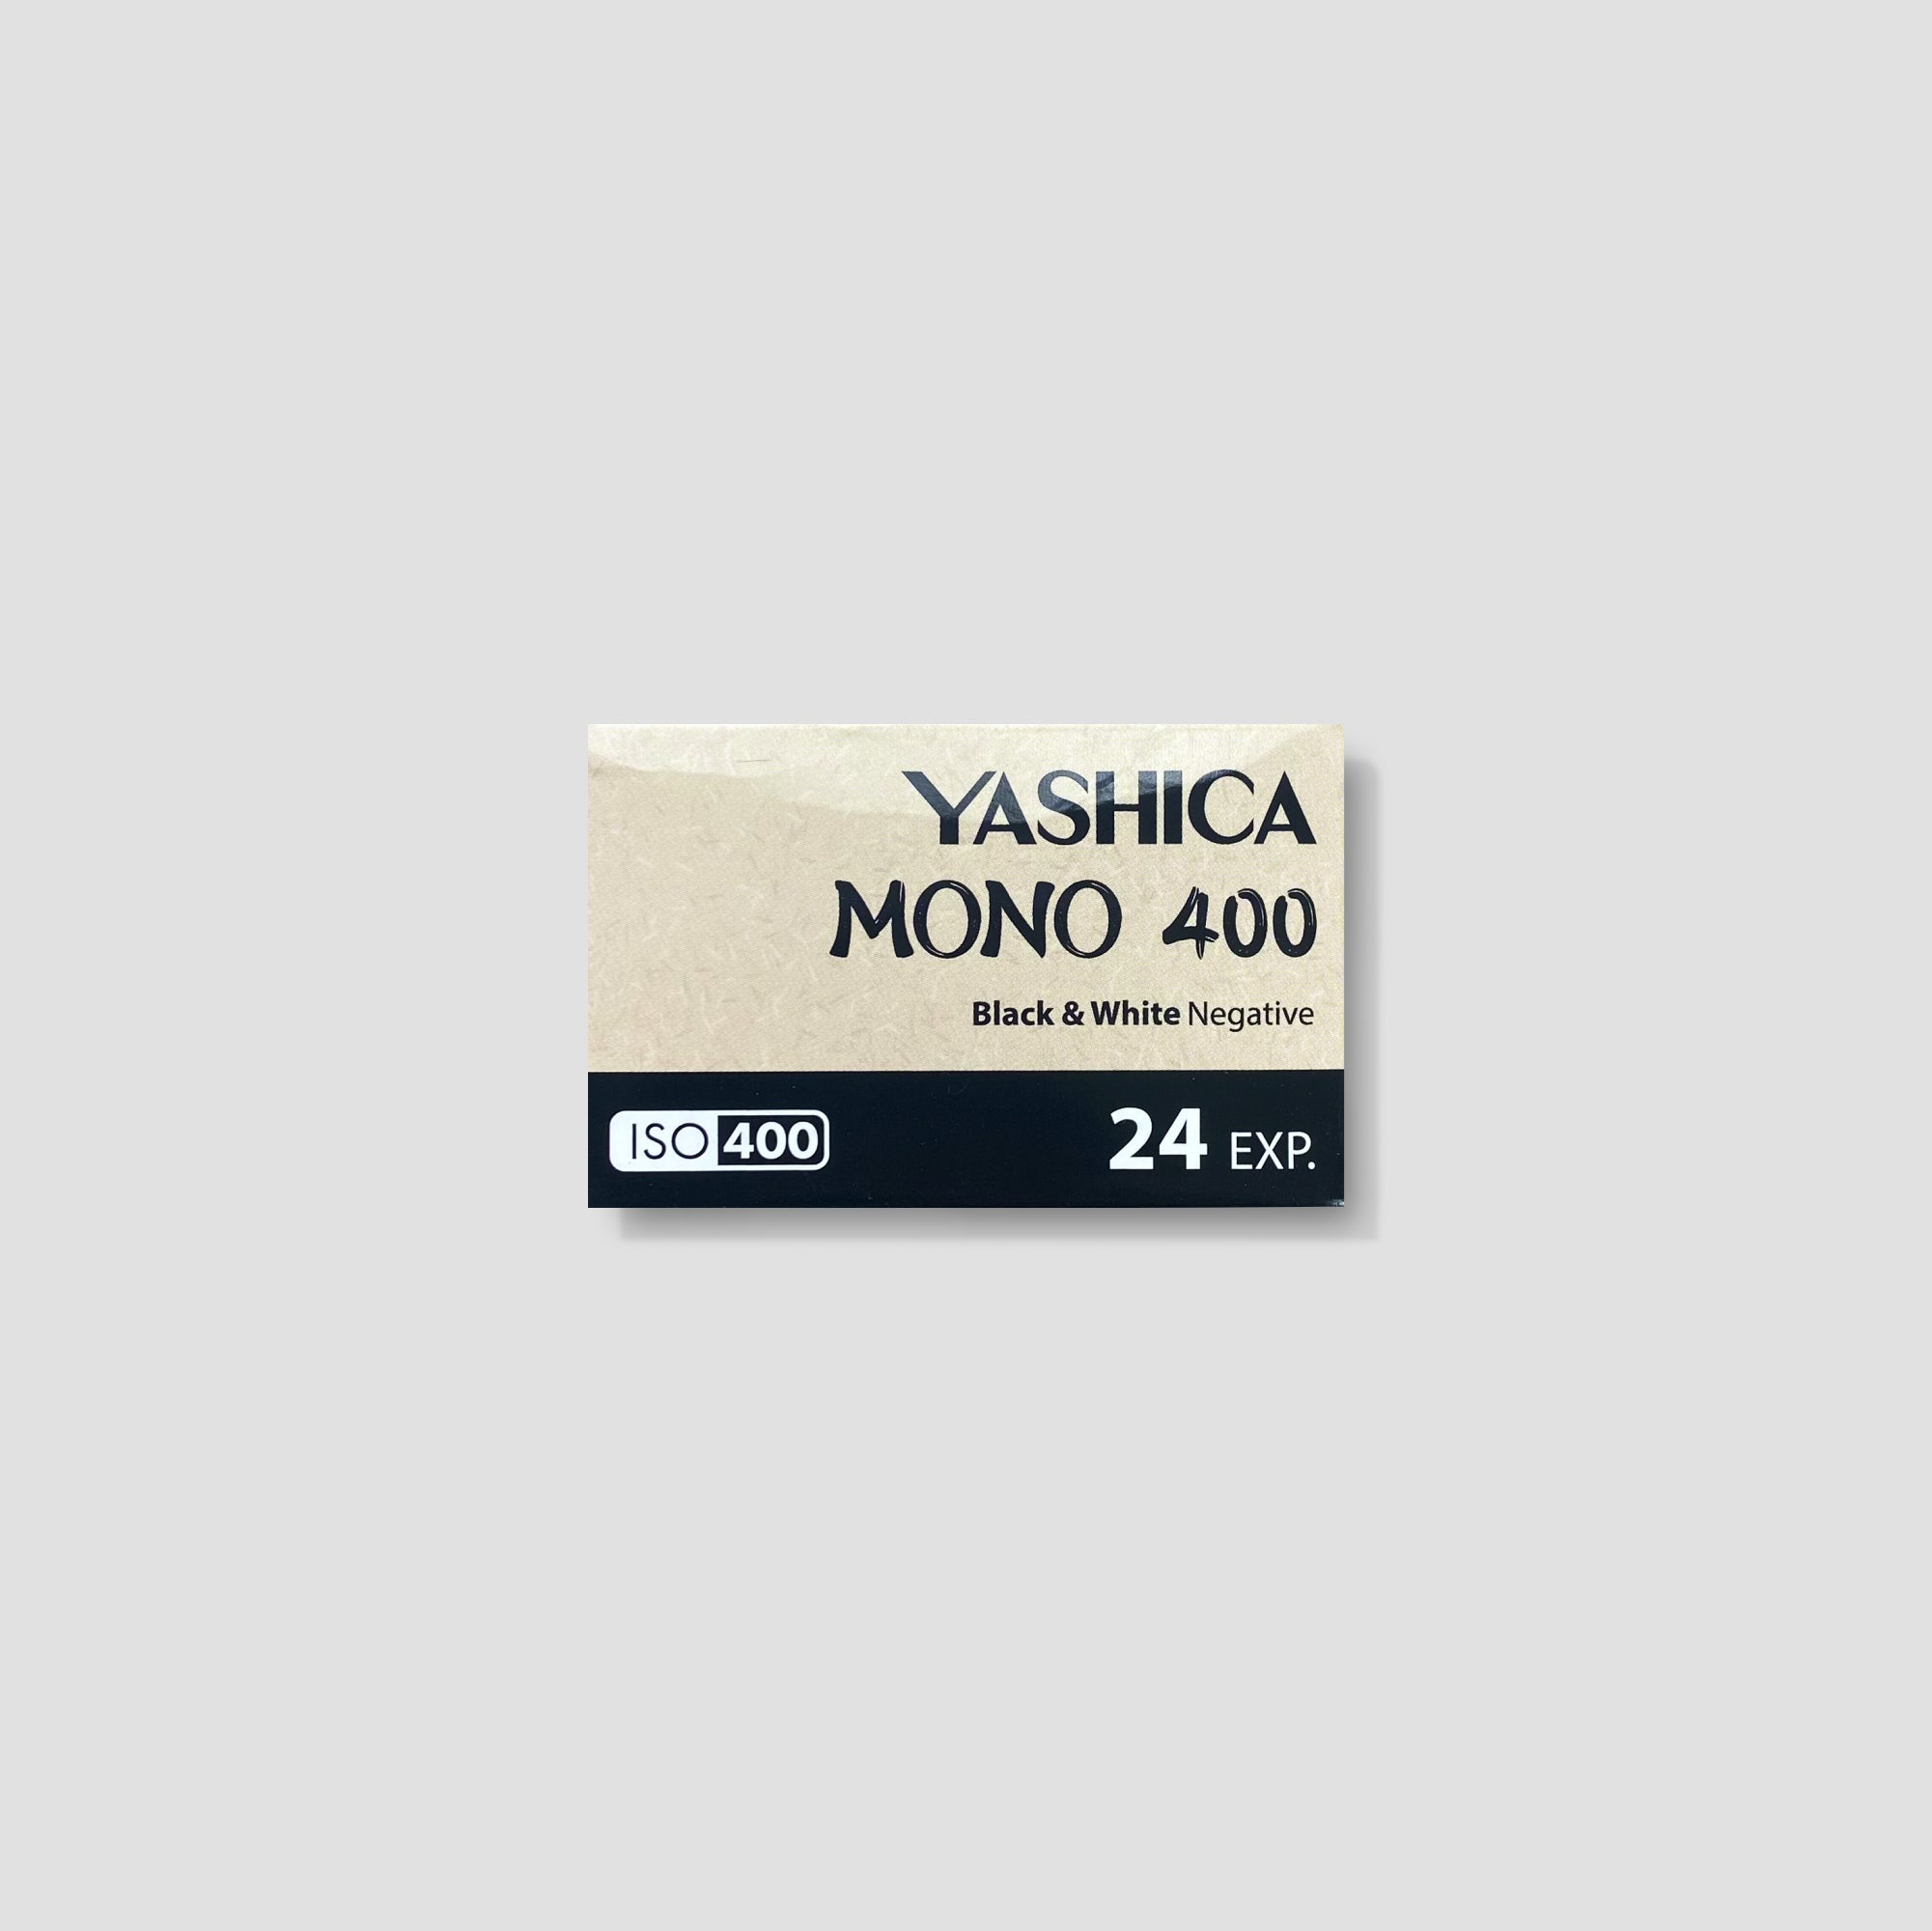 Yashica Mono 400